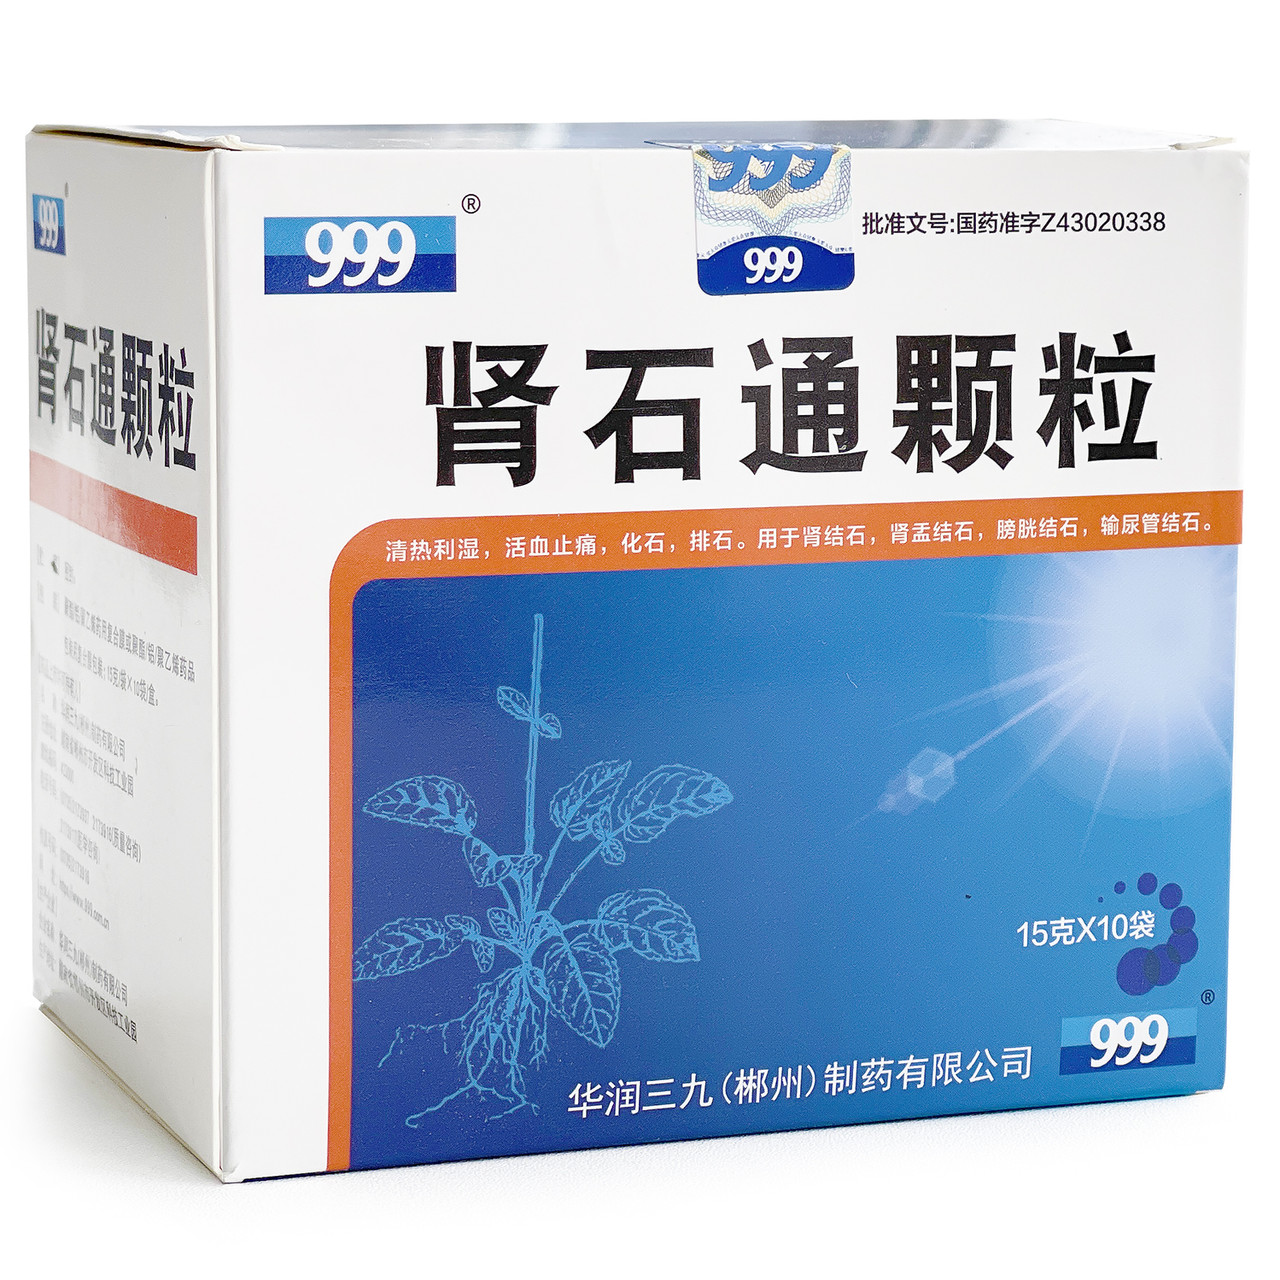 Лікувальний чай "Шеншитонг" Shenshitong Keli 999 (розчиняє камені нирок і сечовивідних шляхів) — 15 грамів х10 шт.